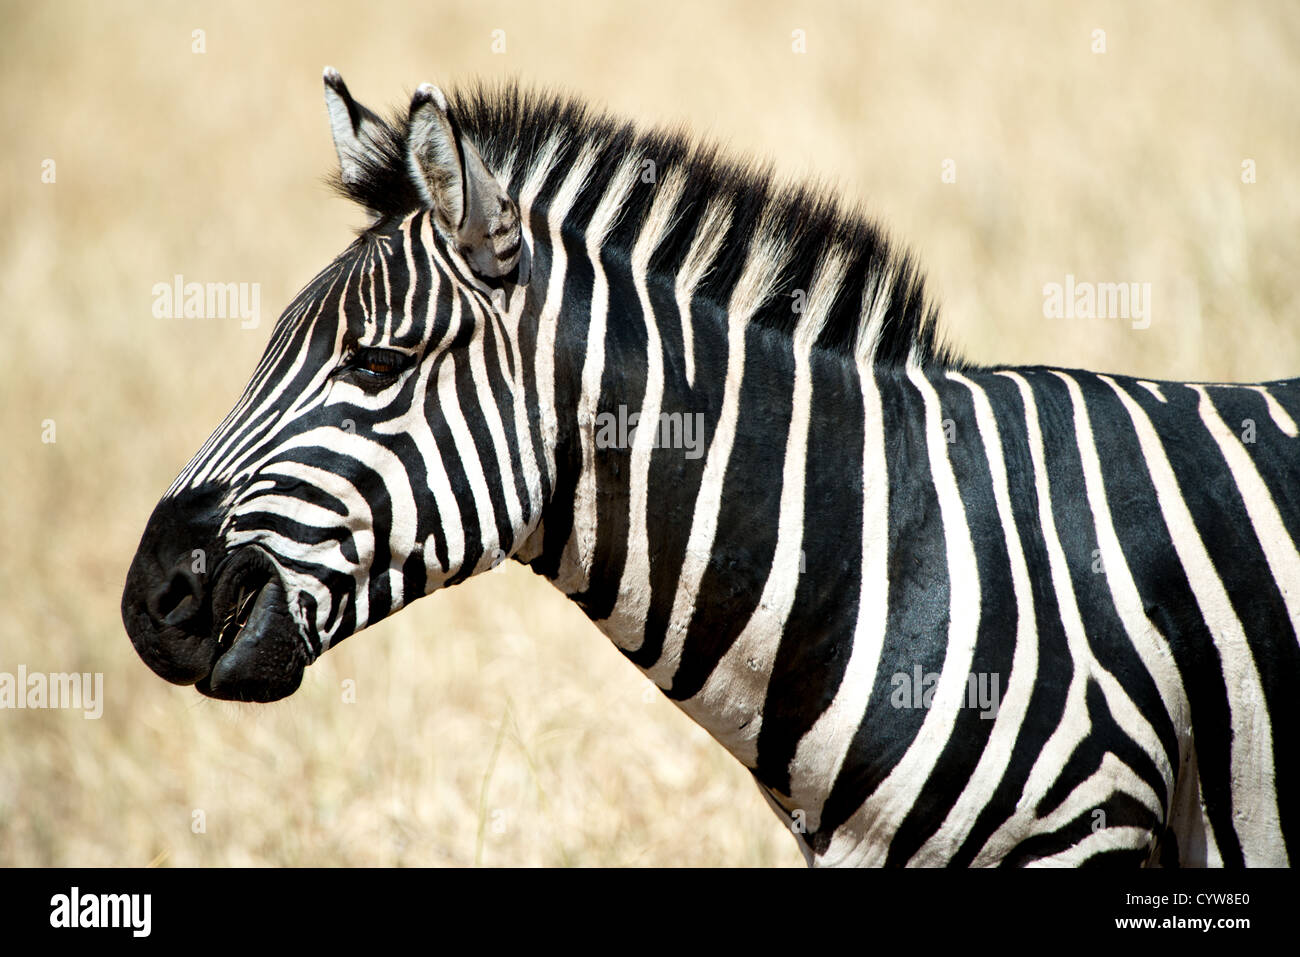 Der Tarangire National Park, Tansania - Profil von einem Zebra in der Tarangire National Park im Norden von Tansania, nicht weit von den Ngorongoro Krater und die Serengeti. Stockfoto